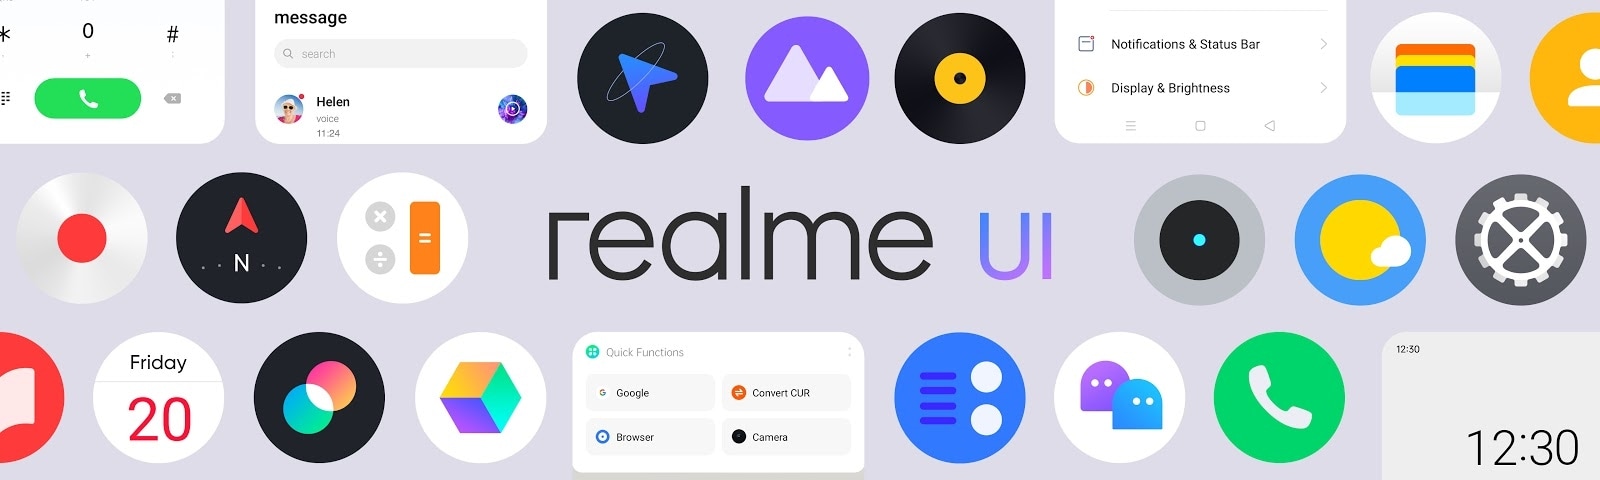 Finalmente Realme svela i dettagli della nuova interfaccia basata su ColorOS 7 e Android 10 (foto)